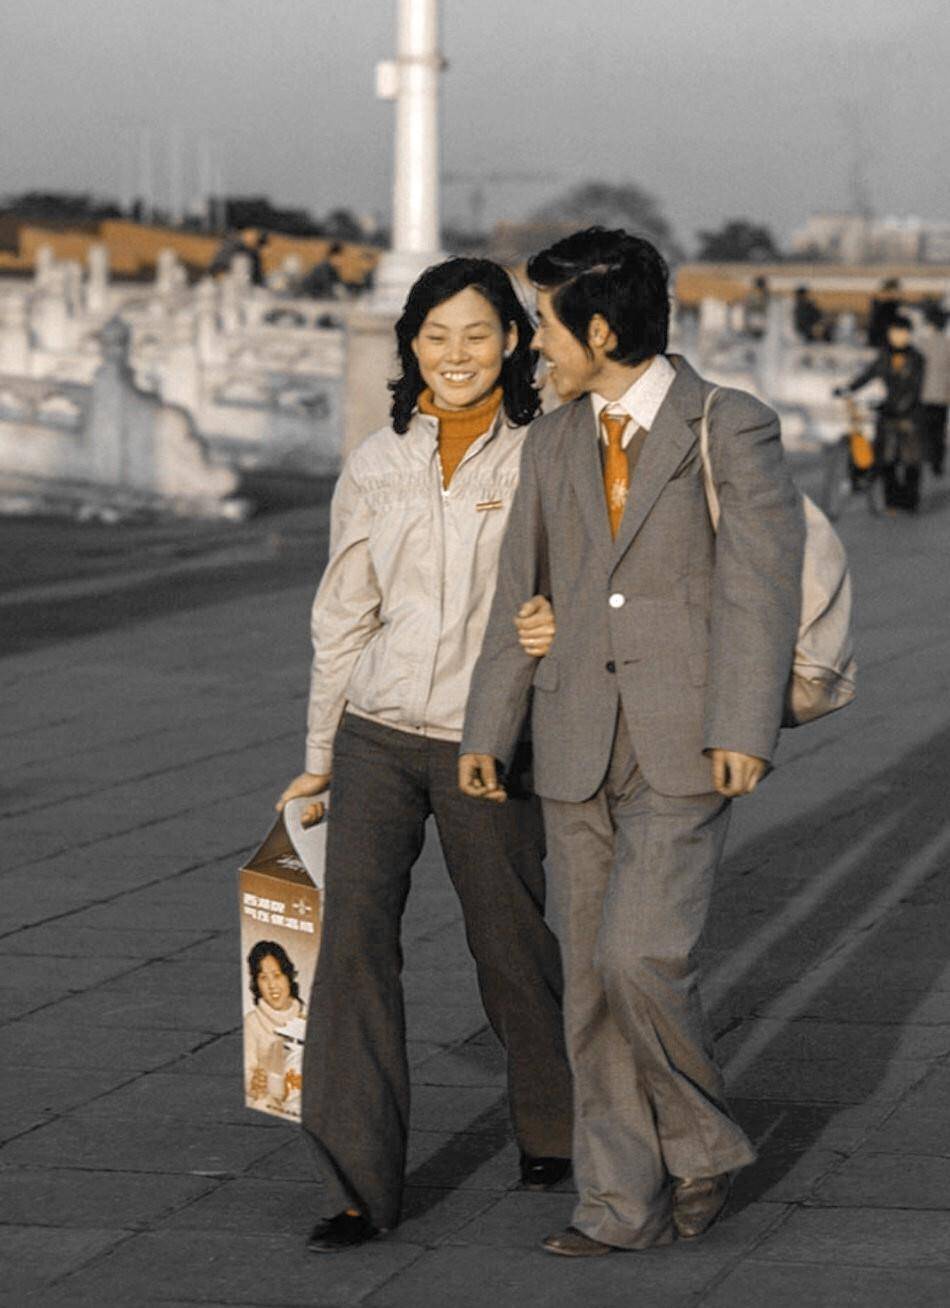 80年代的中国老照片,年轻情侣的时髦装束什么样?